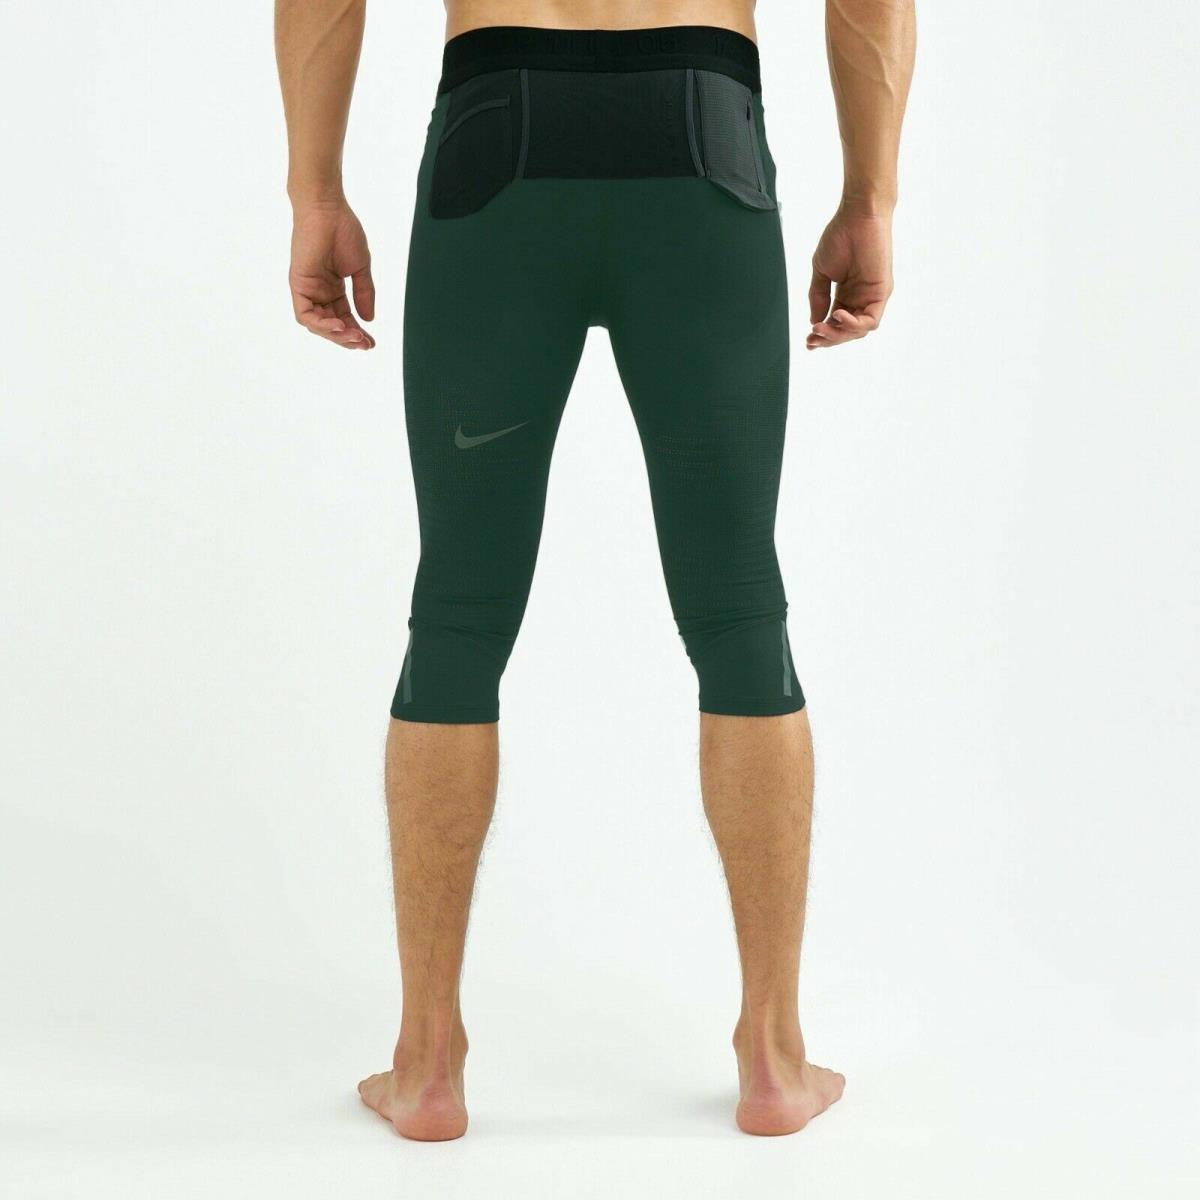 Nike Tech Pack Men`s 3/4 Running Tights Green/black Size 2XL BV5693-370